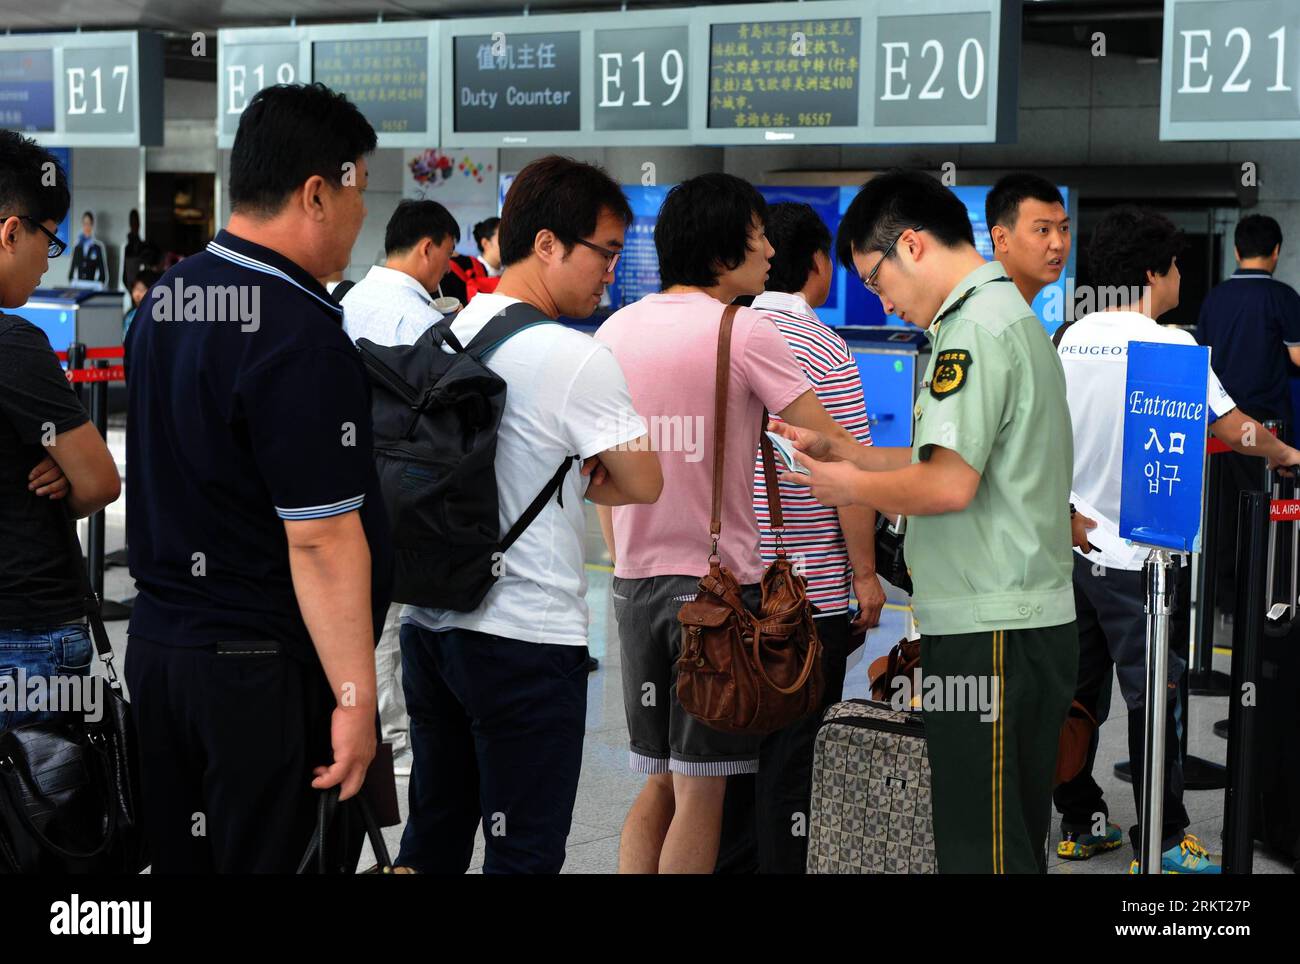 120816 -- QINGDAO, 16 agosto 2012 Xinhua -- un funzionario dell'immigrazione serve i passeggeri all'aeroporto di Qingdao a Qingdao, una città costiera nella provincia dello Shandong della Cina orientale, 16 agosto 2012. Il numero di turisti in partenza a Qingdao è in aumento dall'inizio di agosto, in crescita del 23,3% rispetto agli anni precedenti. Il flusso di ingresso e uscita più alto in un solo giorno ha raggiunto 7.144, superando il record registrato durante i Giochi Olimpici di Pechino. Xinhua/li Ziheng cl CHINA-QINGDAO-TOURISM CN PUBLICATIONxNOTxINxCHN Foto Stock